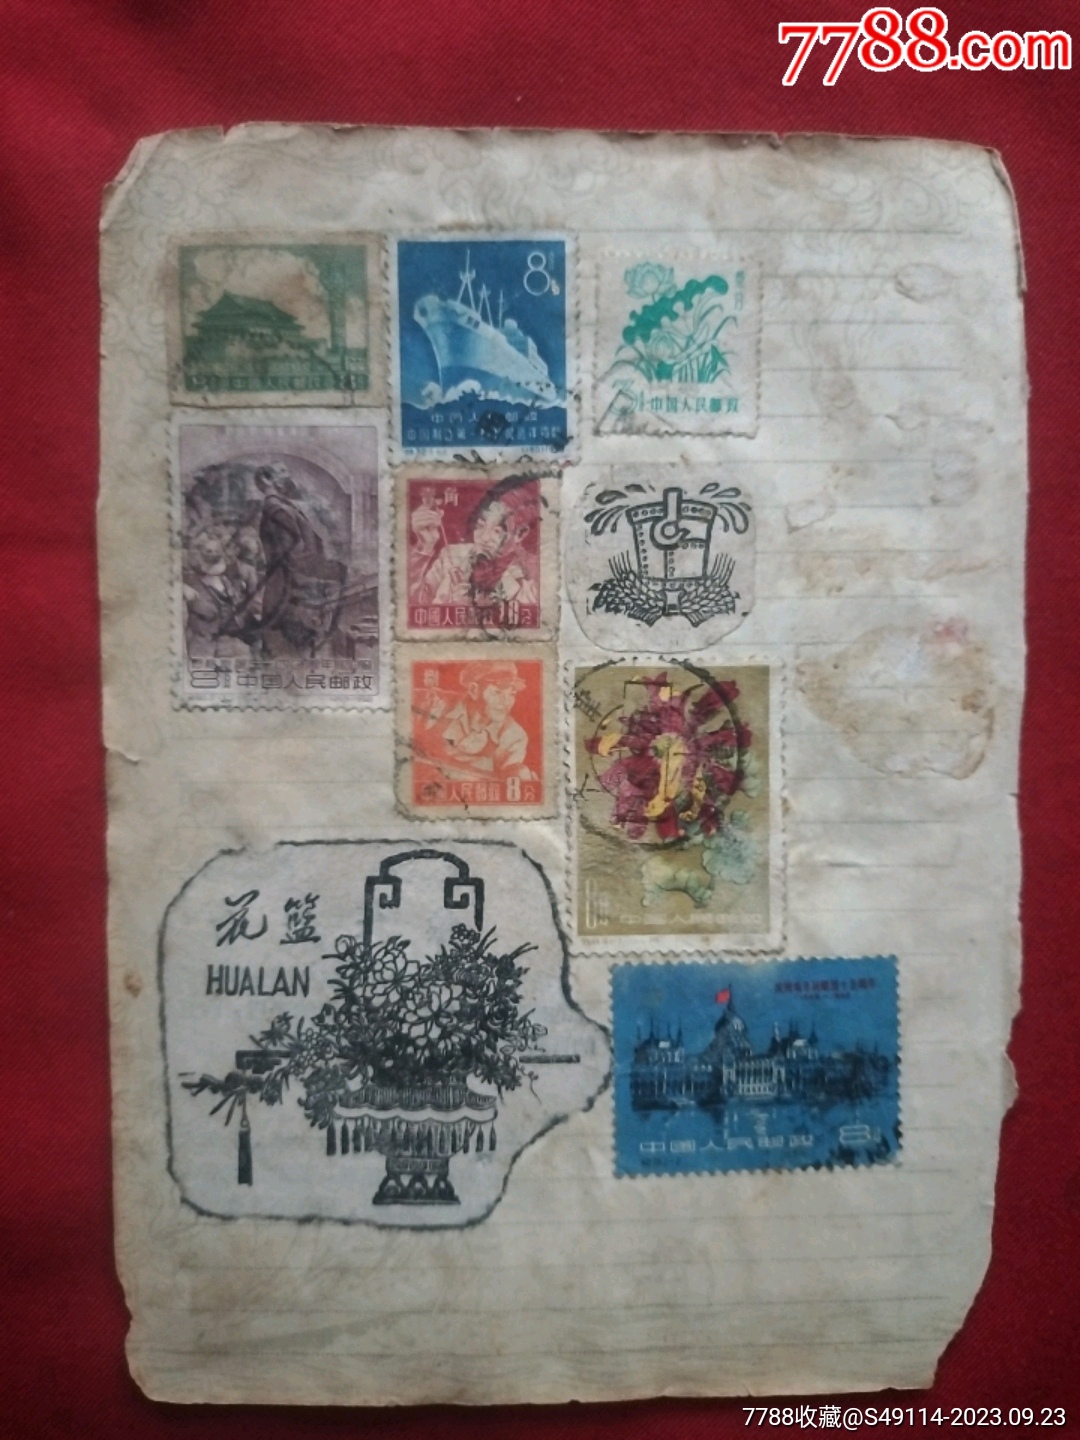 2002年特种邮票《壬午年》 - 邮票印制局